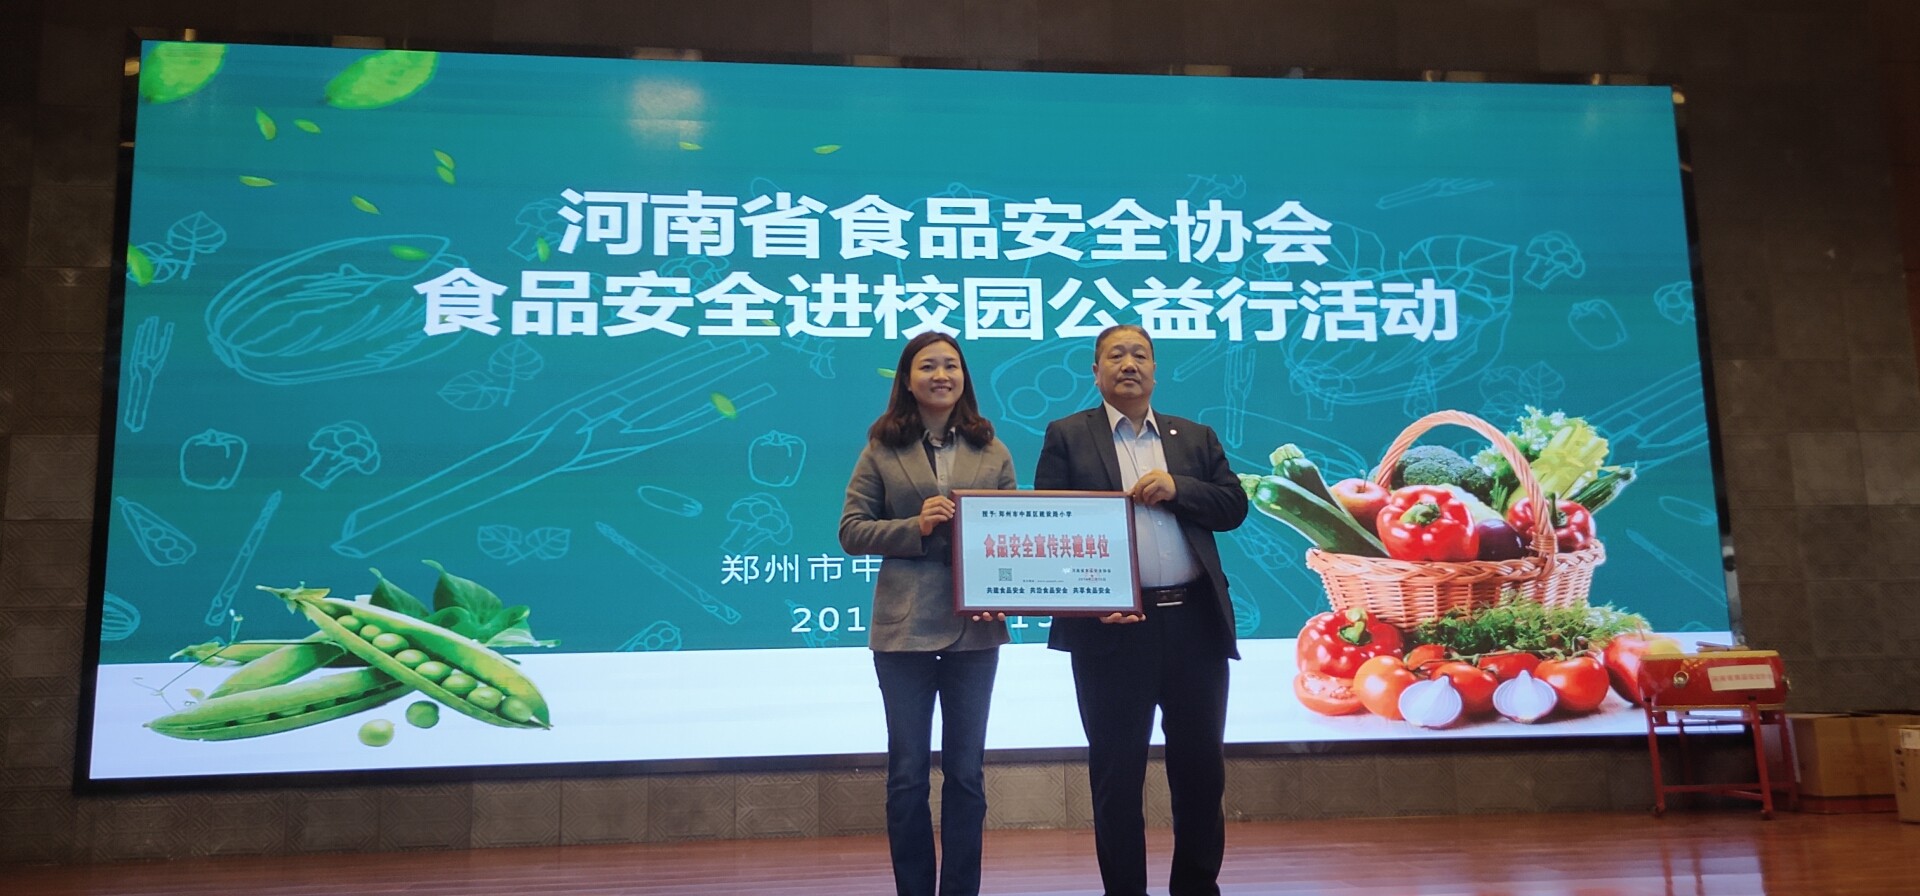 河南省食品安全协会食品安全 进校园公益行活动